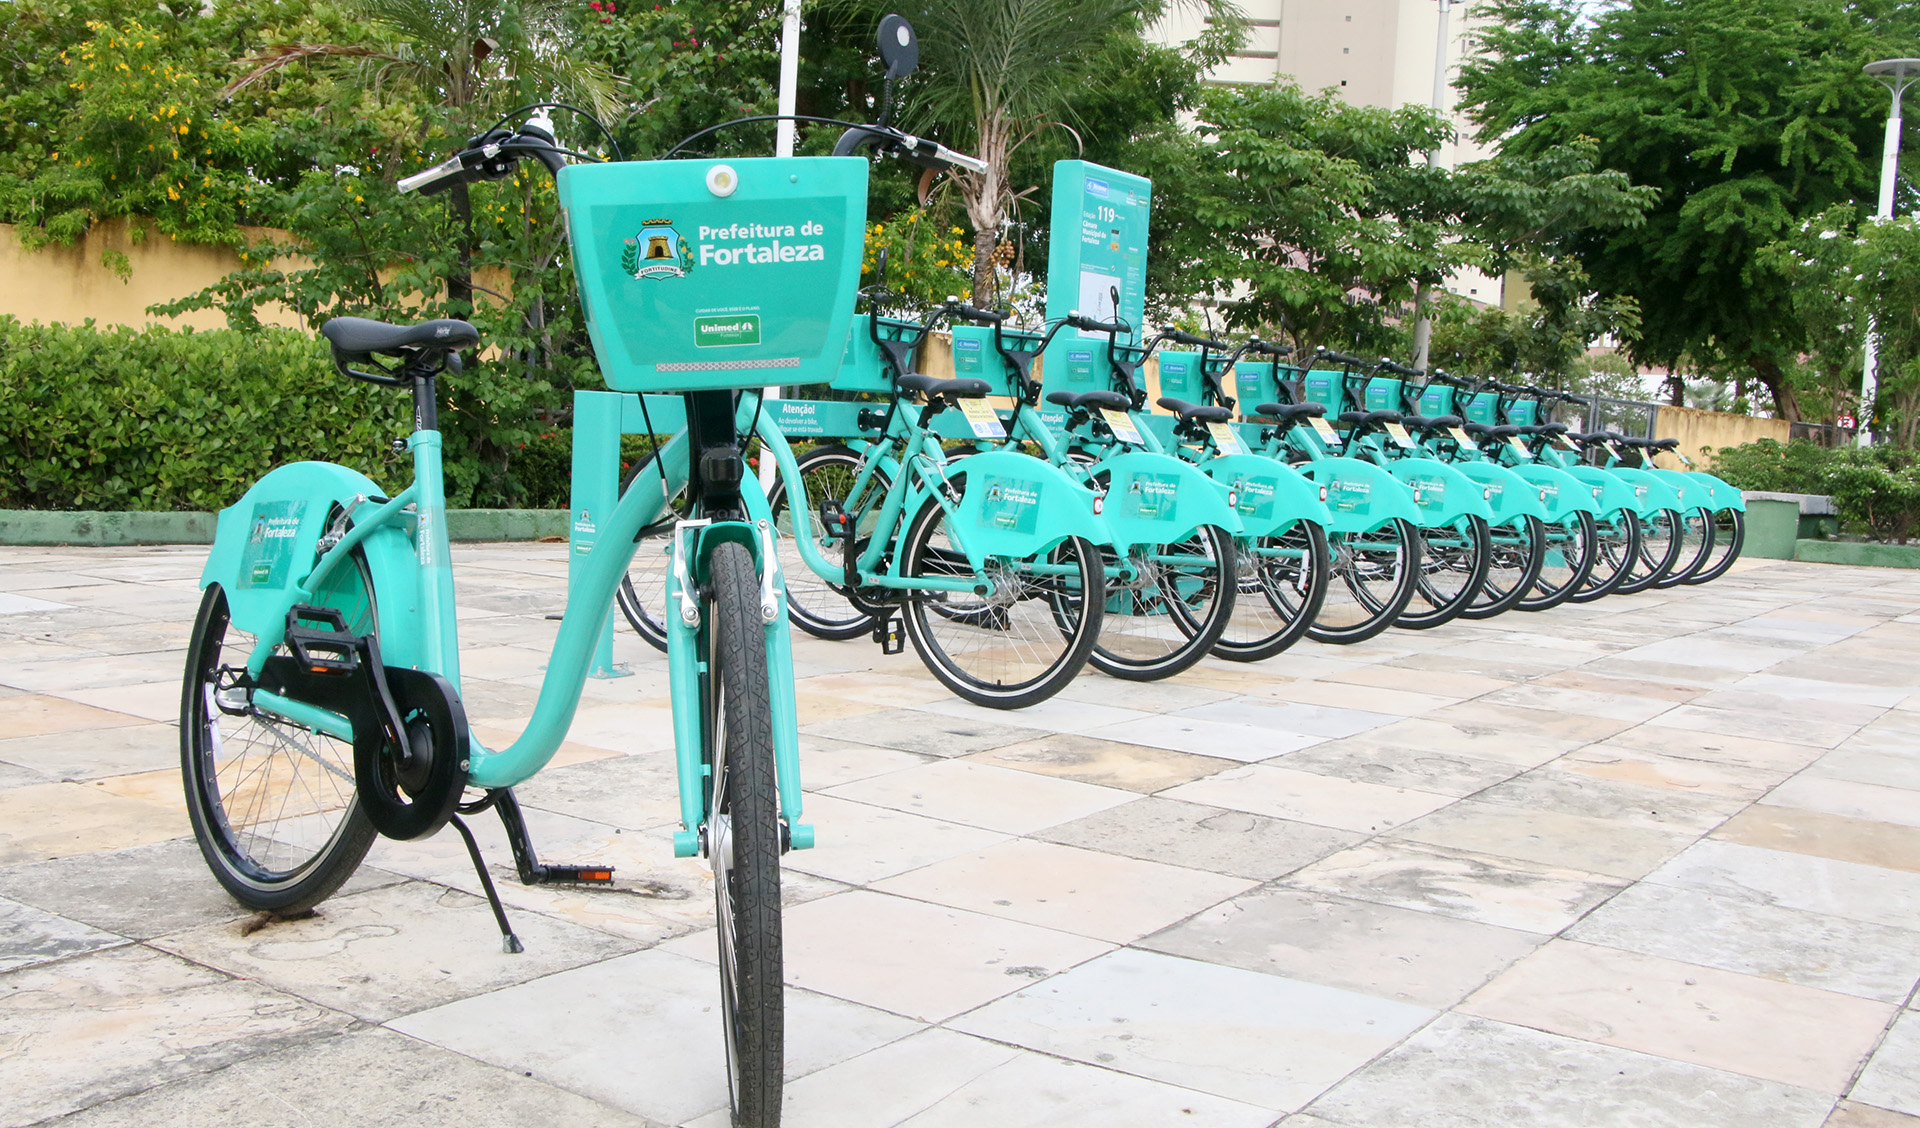 bicicletas estacionadas em estação em cima de calçada